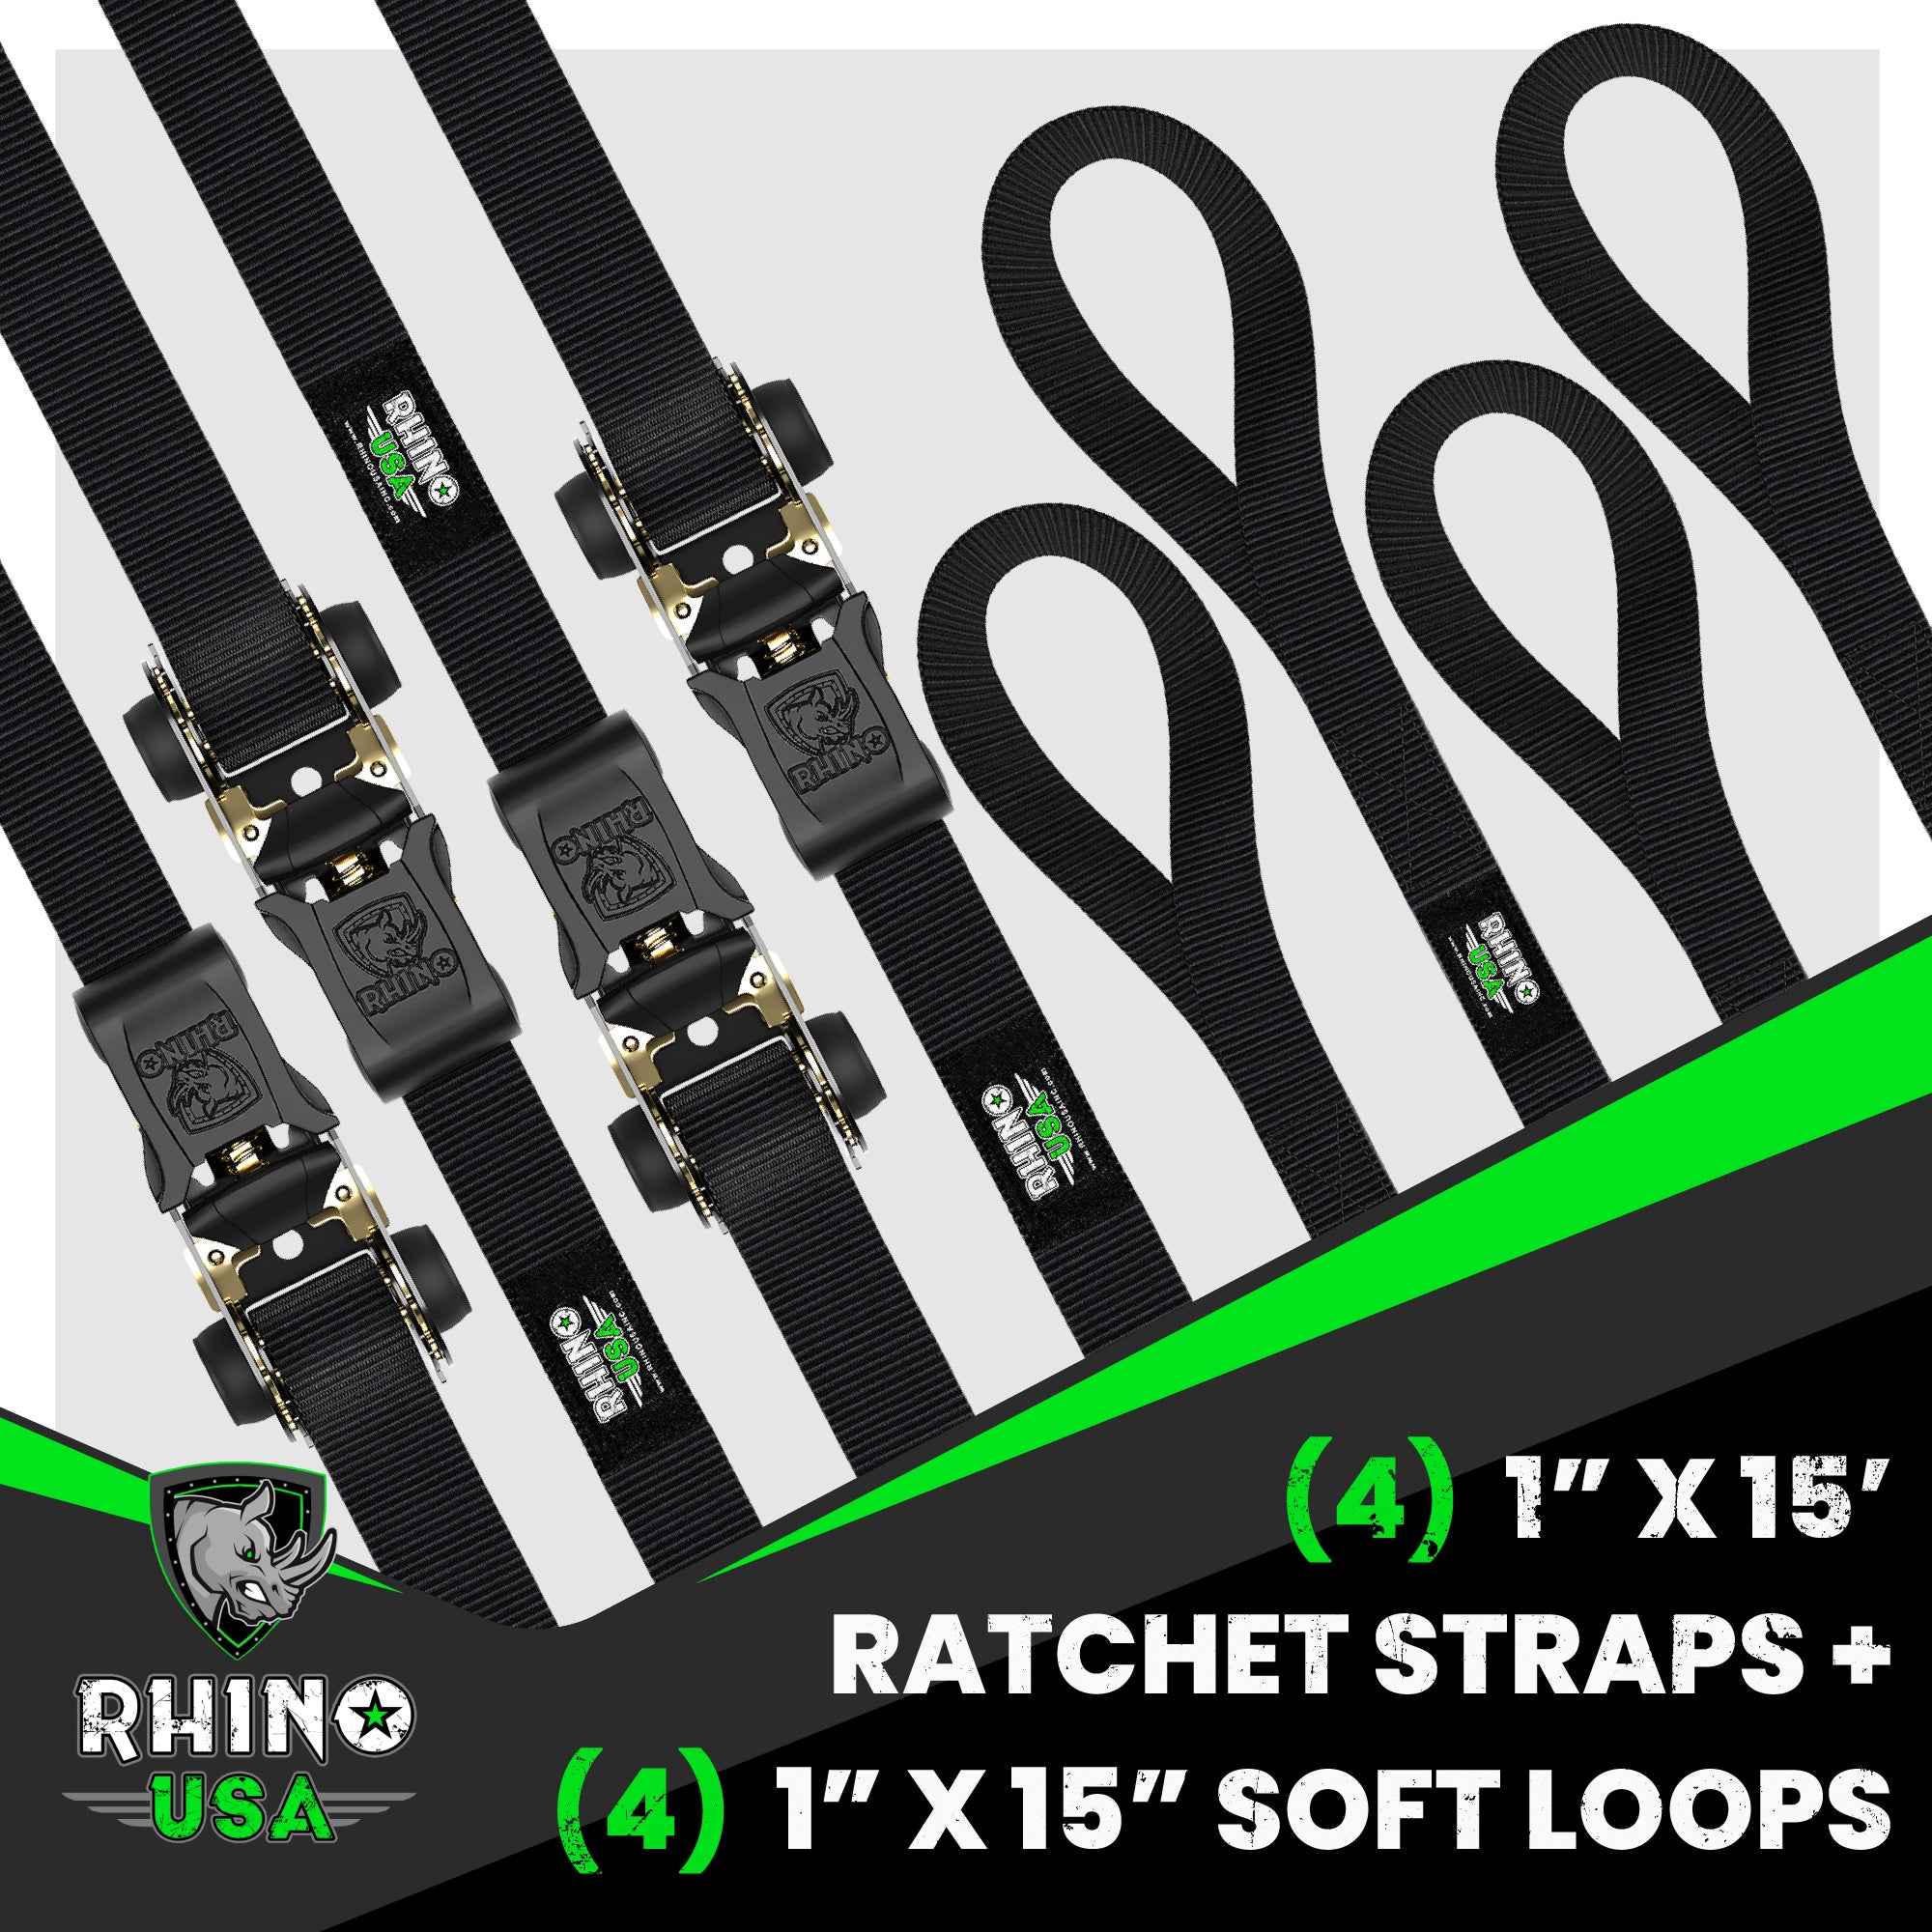  RHINO USA Ratchet Straps Tie Down Kit for ATV, 5,208